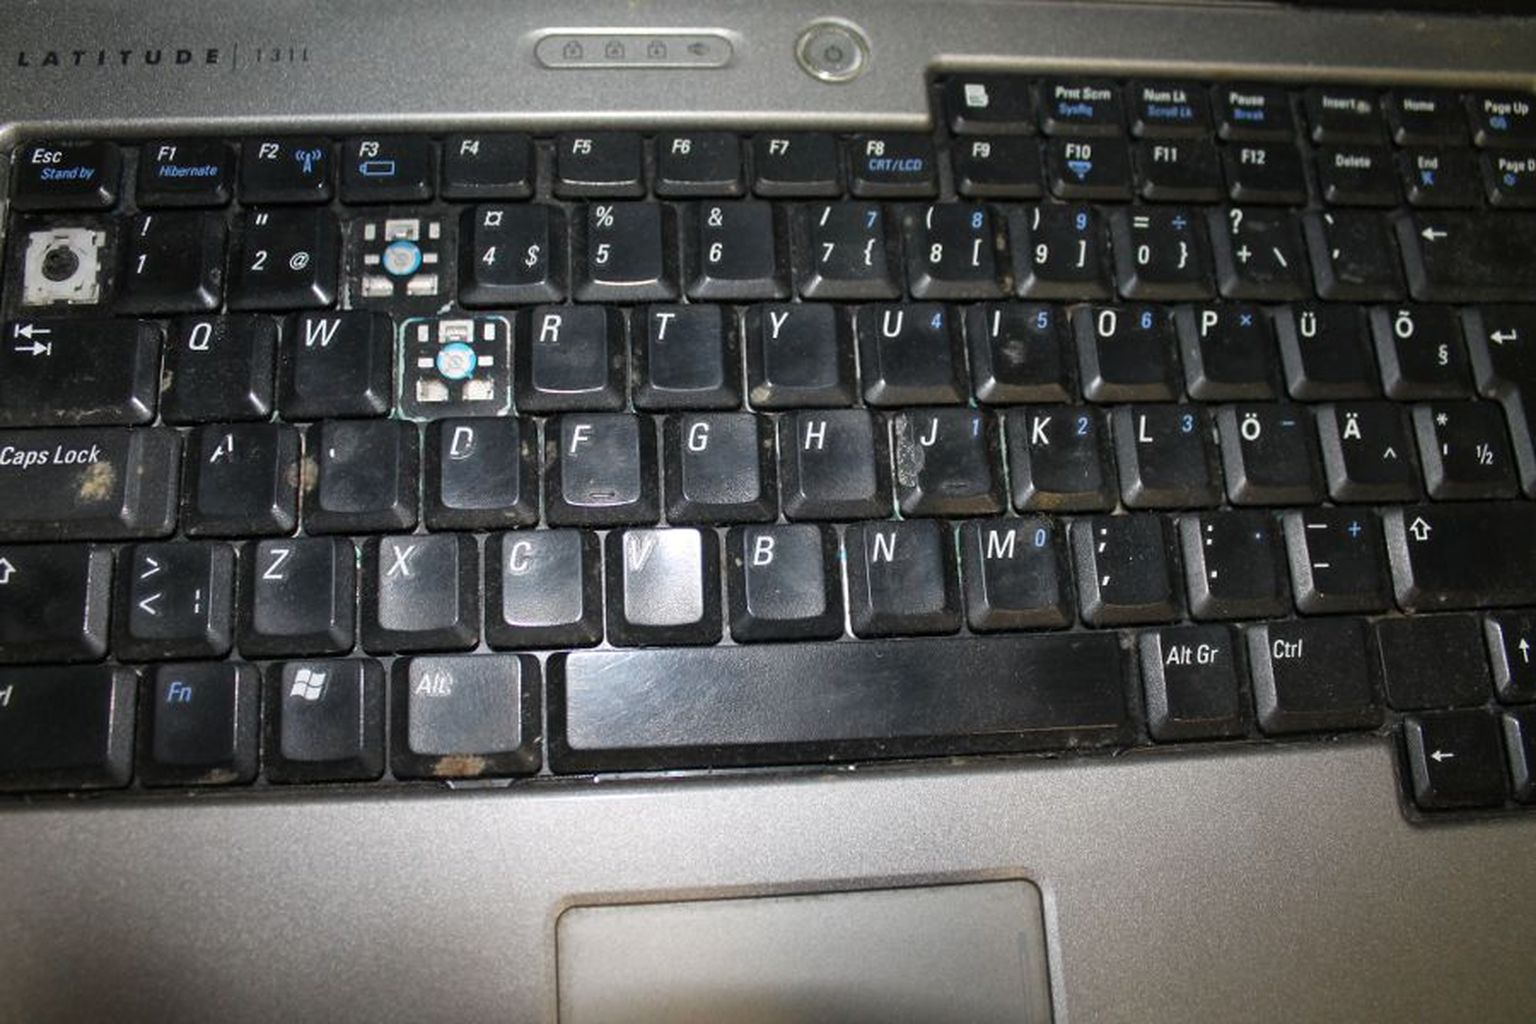 Kelmi poolt üleantud arvutikotis on olnud vanad, mittetöötavad, kohati ka klahvideta ja väärtuseta sülearvutid.